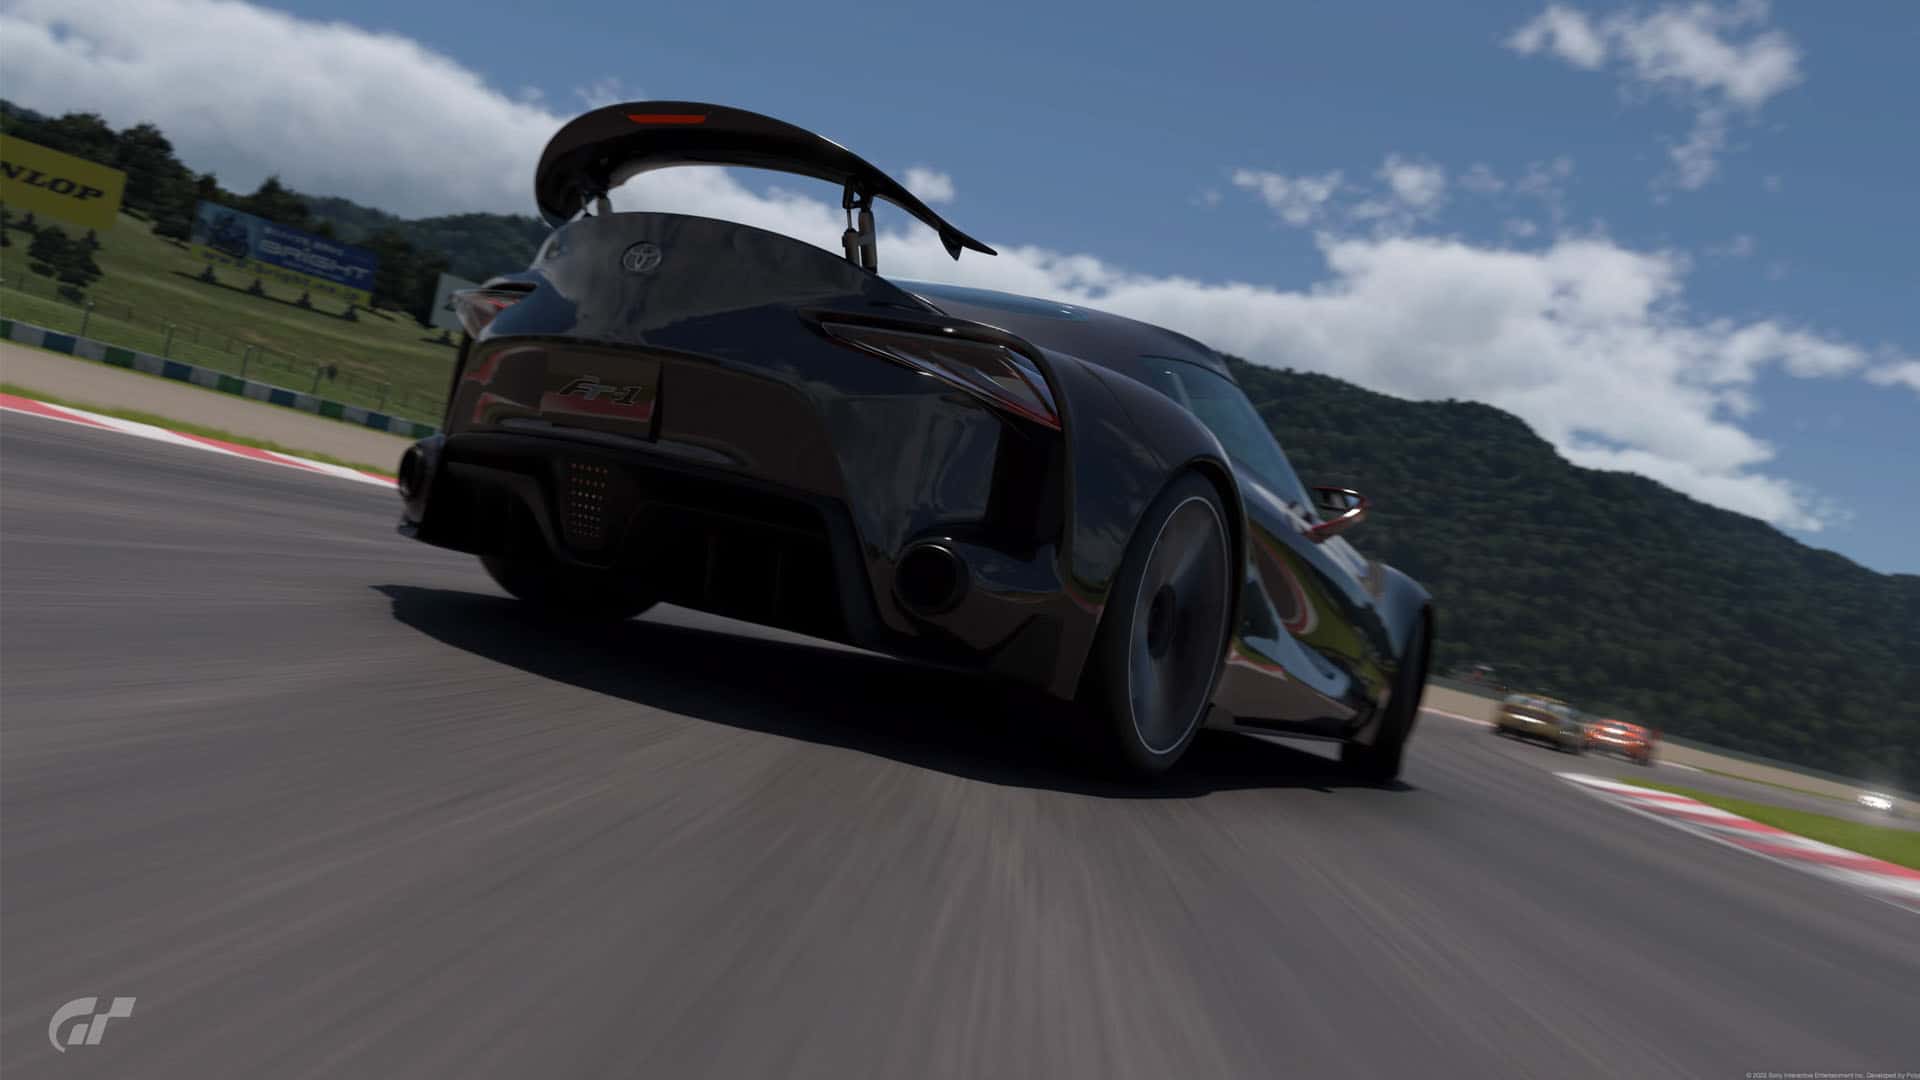 Minor Gran Turismo 7 update removes progress block 